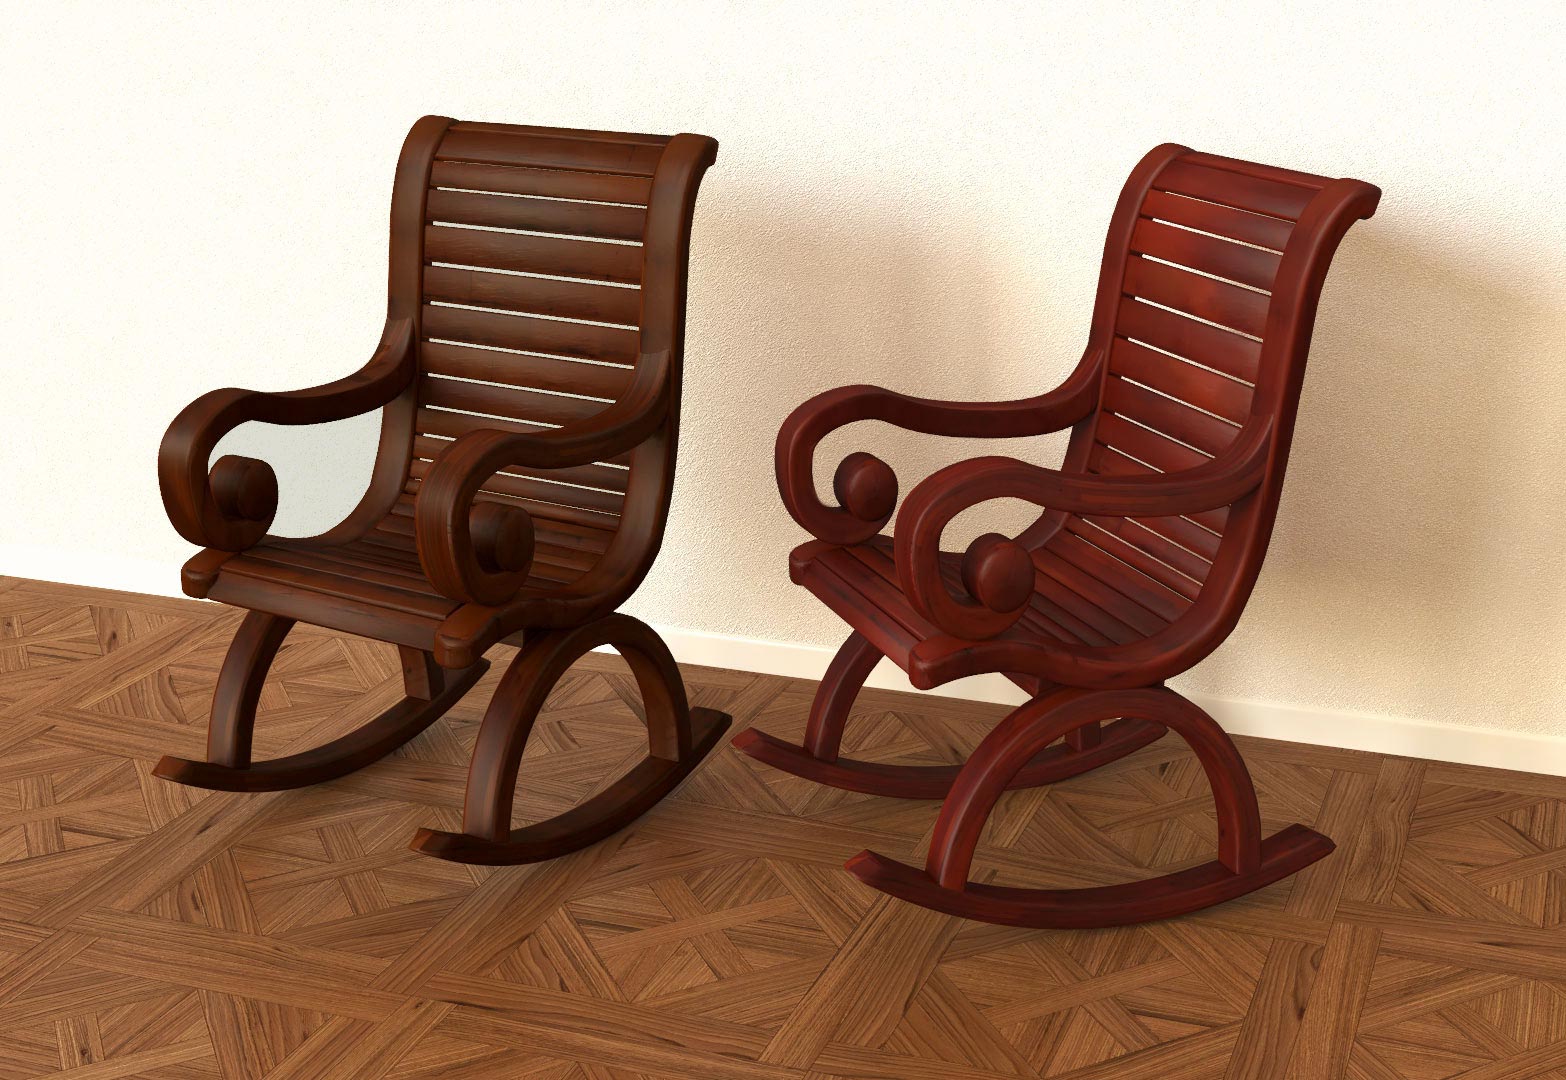 Graphiste 3d design de mobilier rocking chair